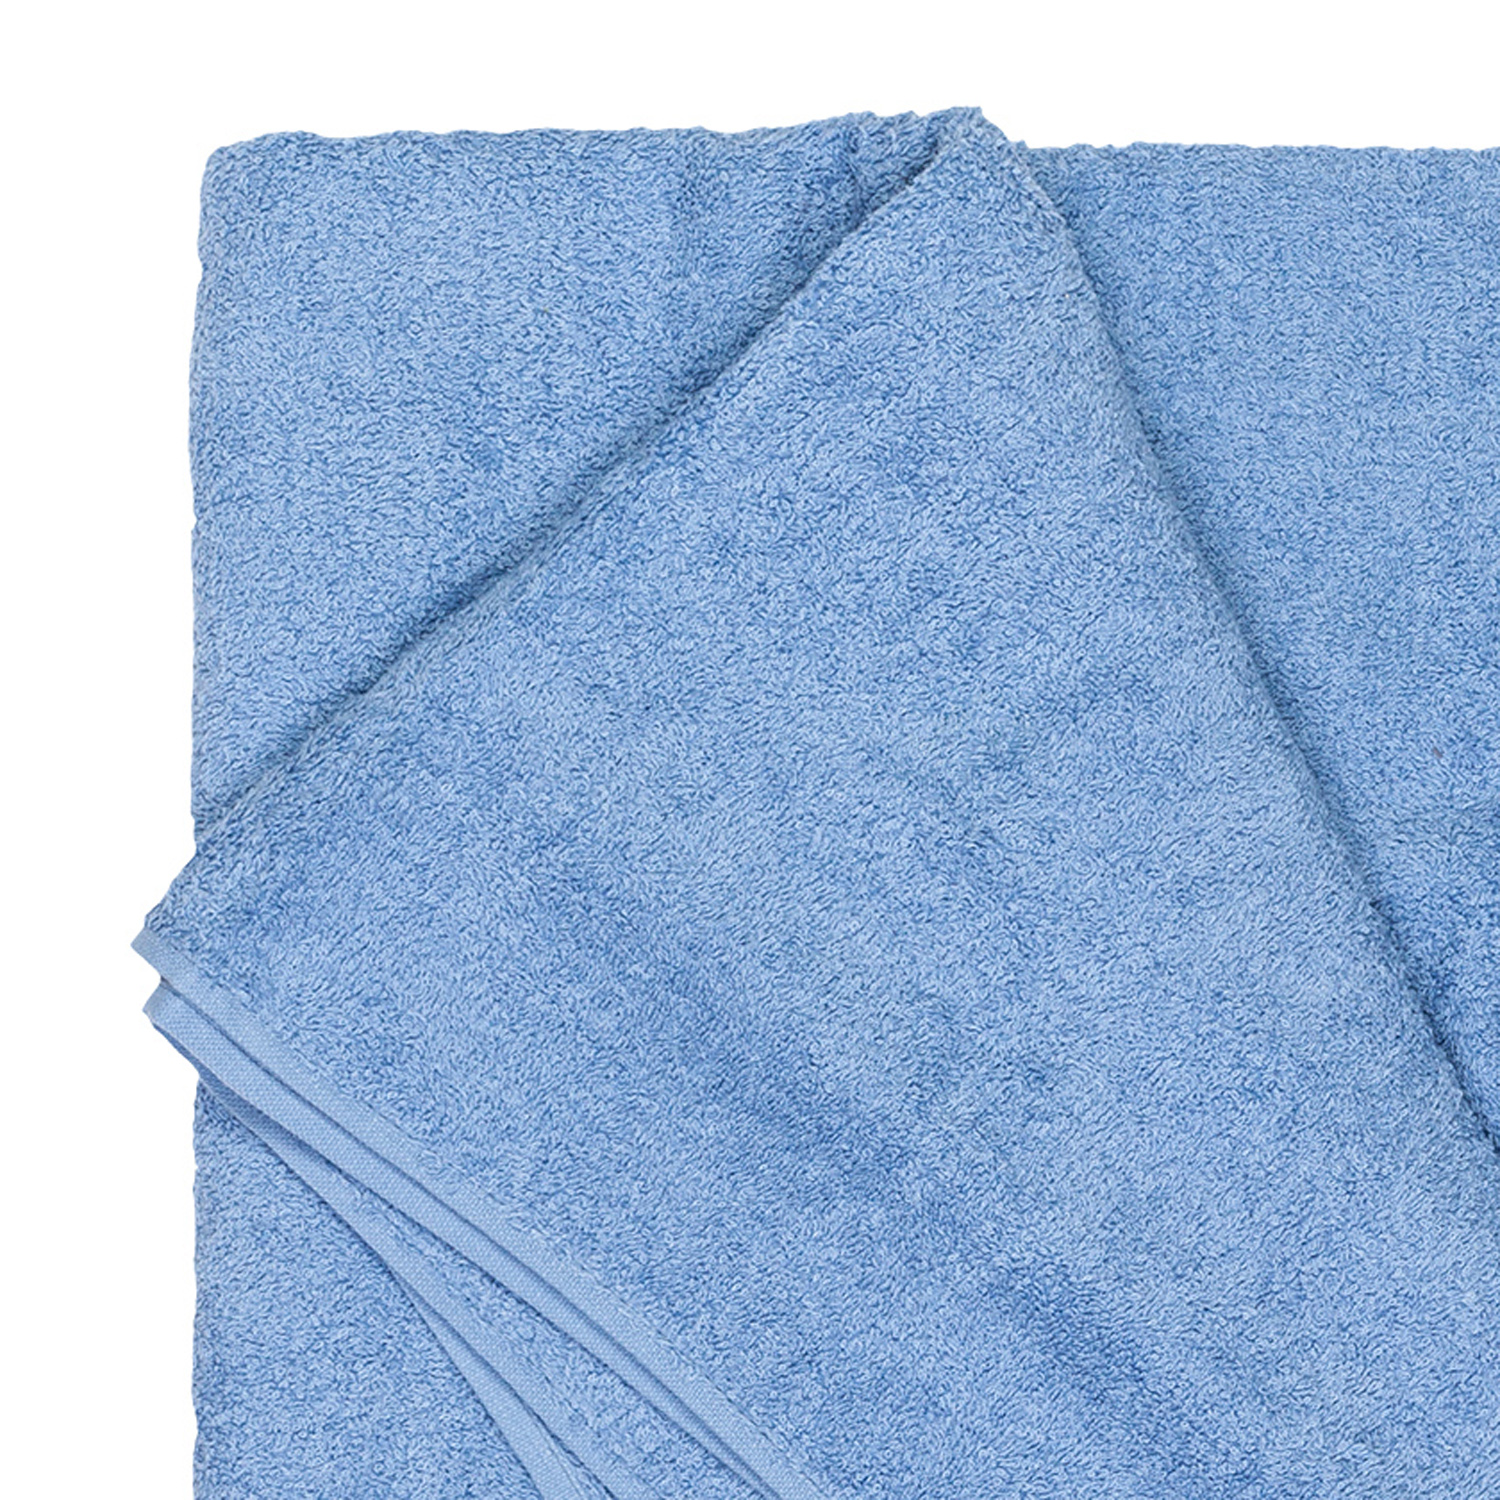 Bath towel series Helsinki in light blue by Adamo in large sizes 100x220 cm or 155x220 cm